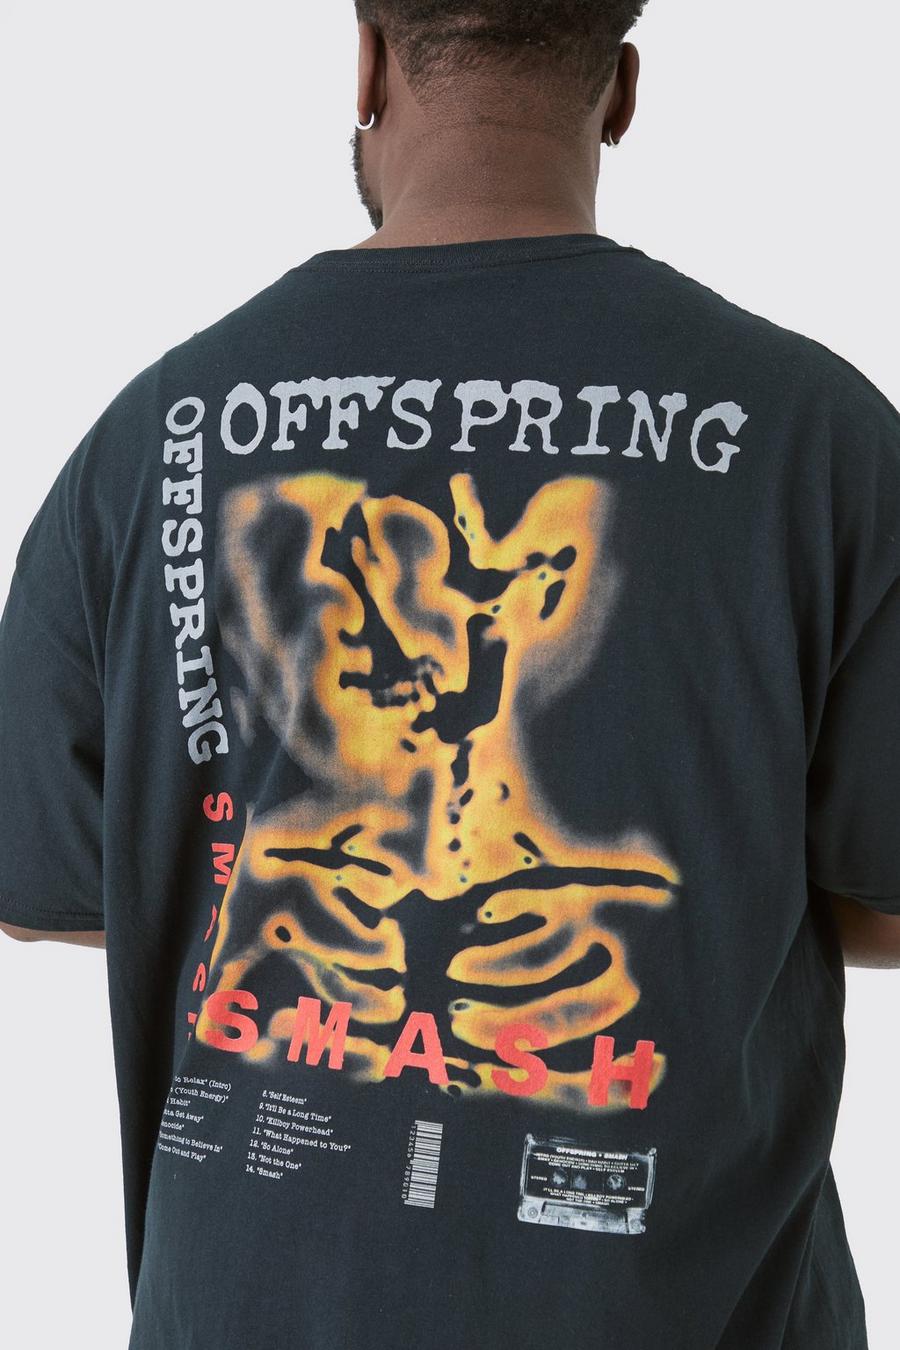 Plus Offspring License T-shirt Black